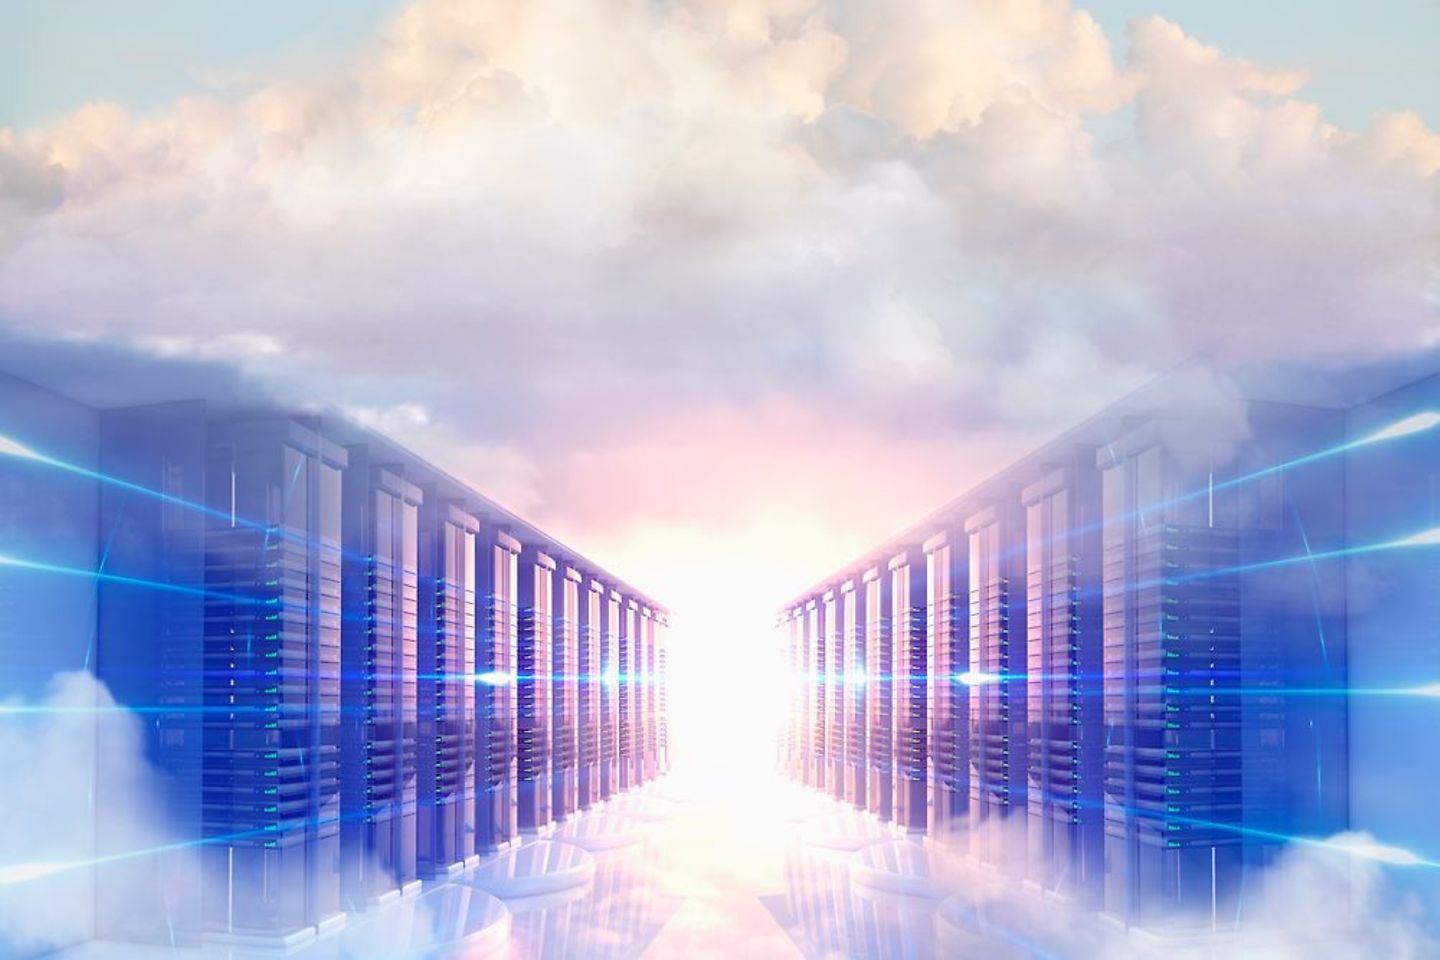 Serverschränke, umgeben von pastellfarbenen Wolken und einer Lichtquelle in der Mitte